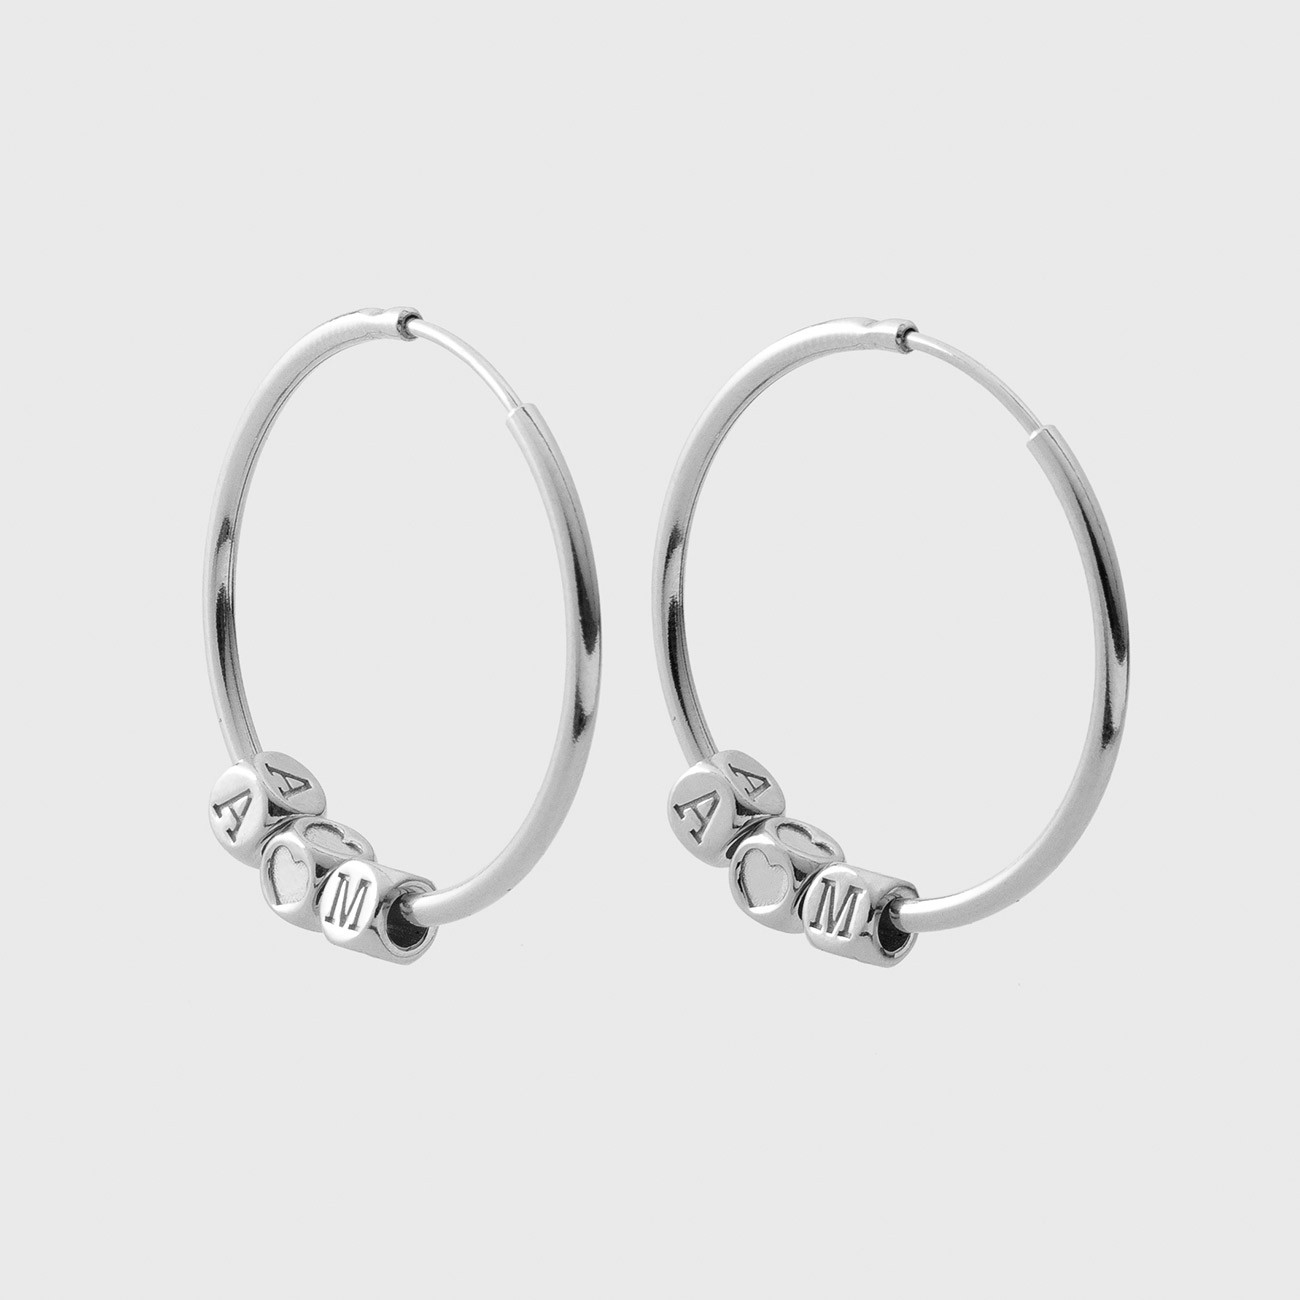 Star earrings, sterling silver 925